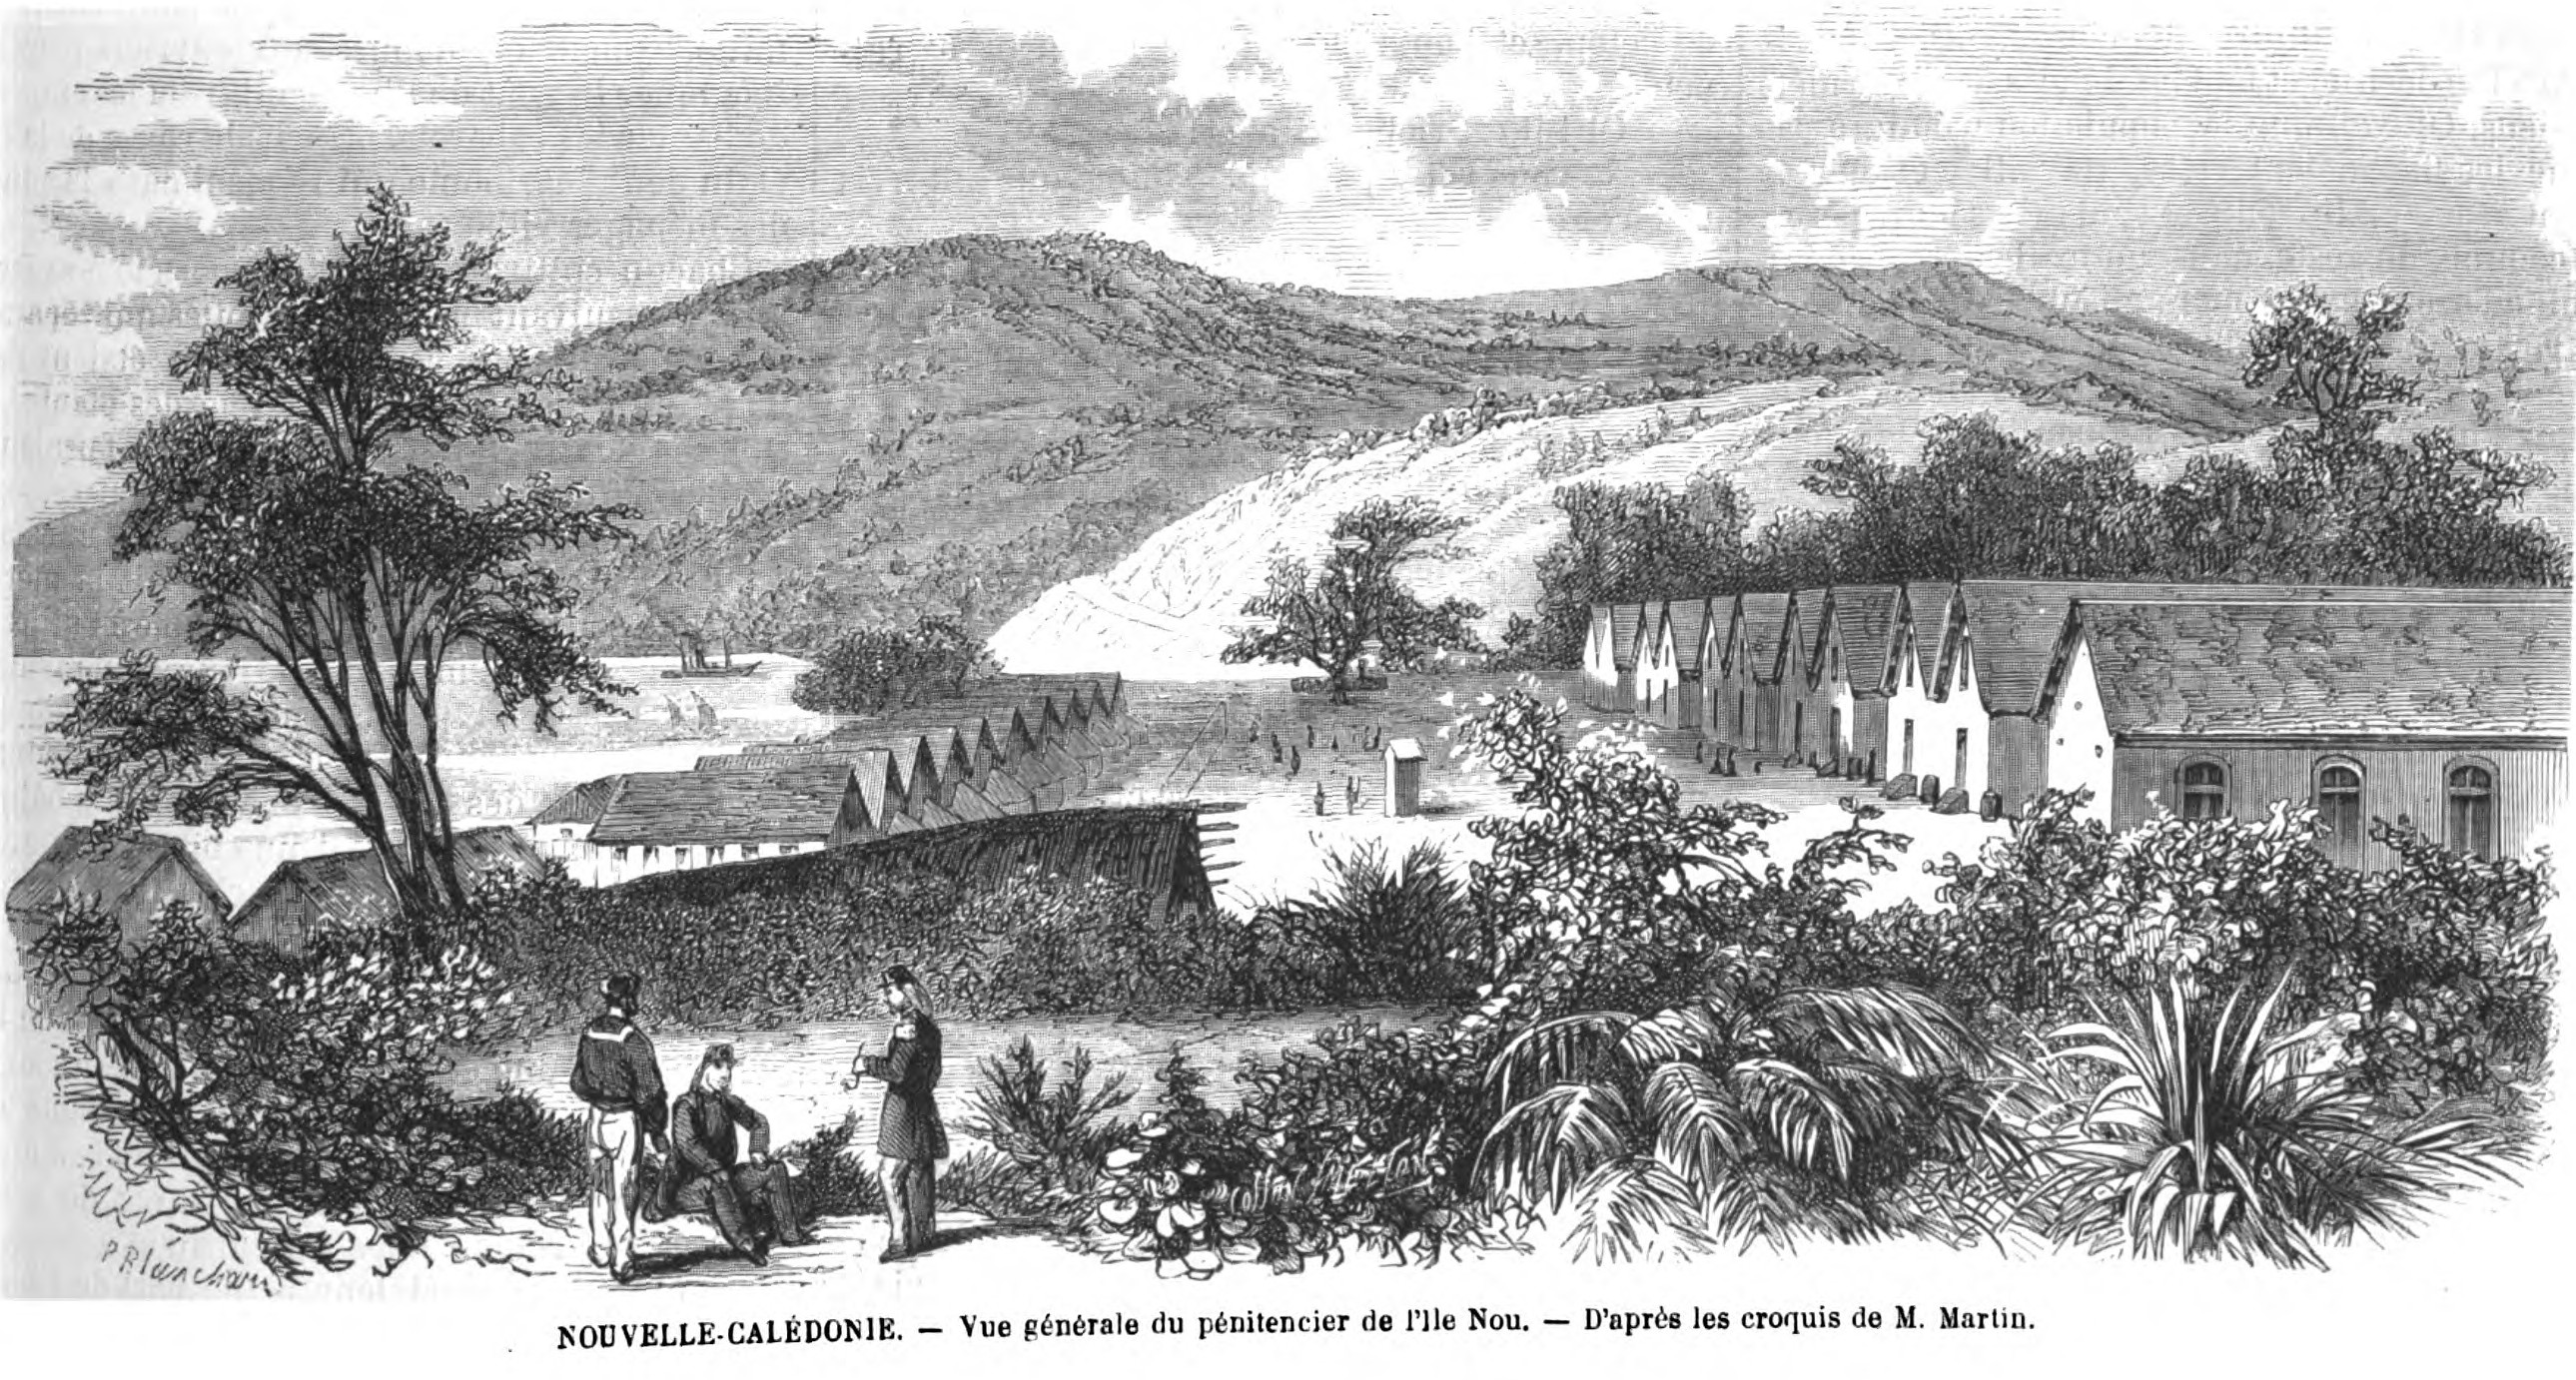 Pénitencier de l'Ile Nou en Nouvelle-Calédonie (source : L'Illustration du 1er août 1868)